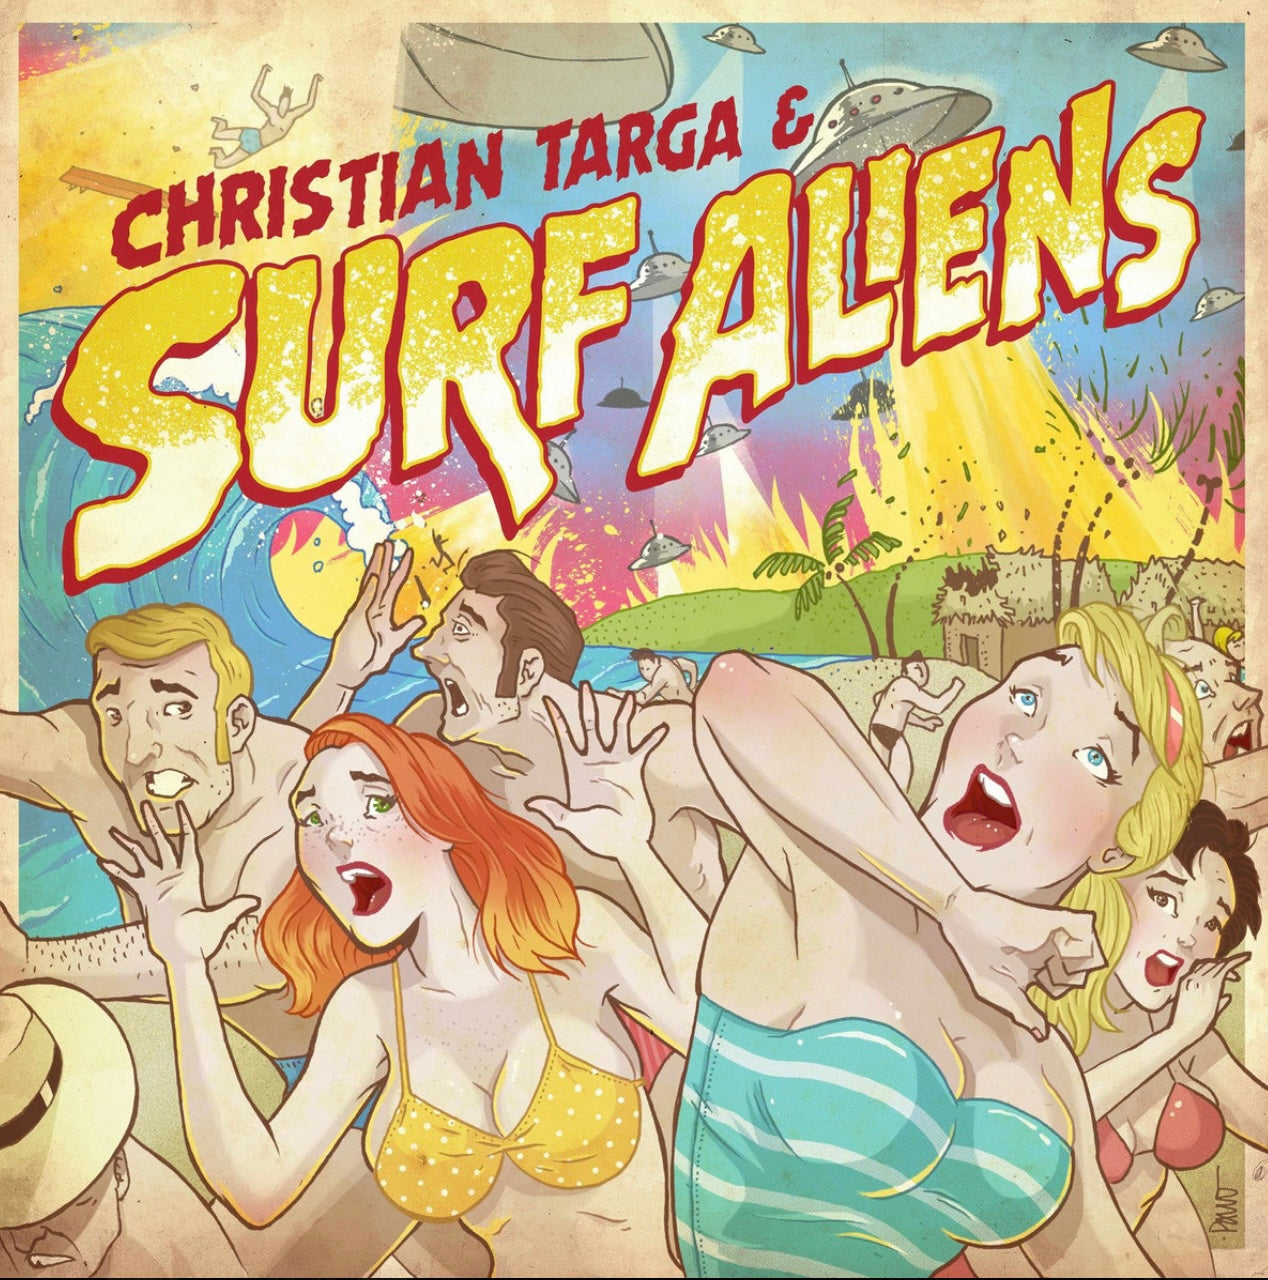 OMR-005 CHRISTIAN TARGA & THE SURF ALIENS (CD/EP, 7 inch Vinyl-Colored)